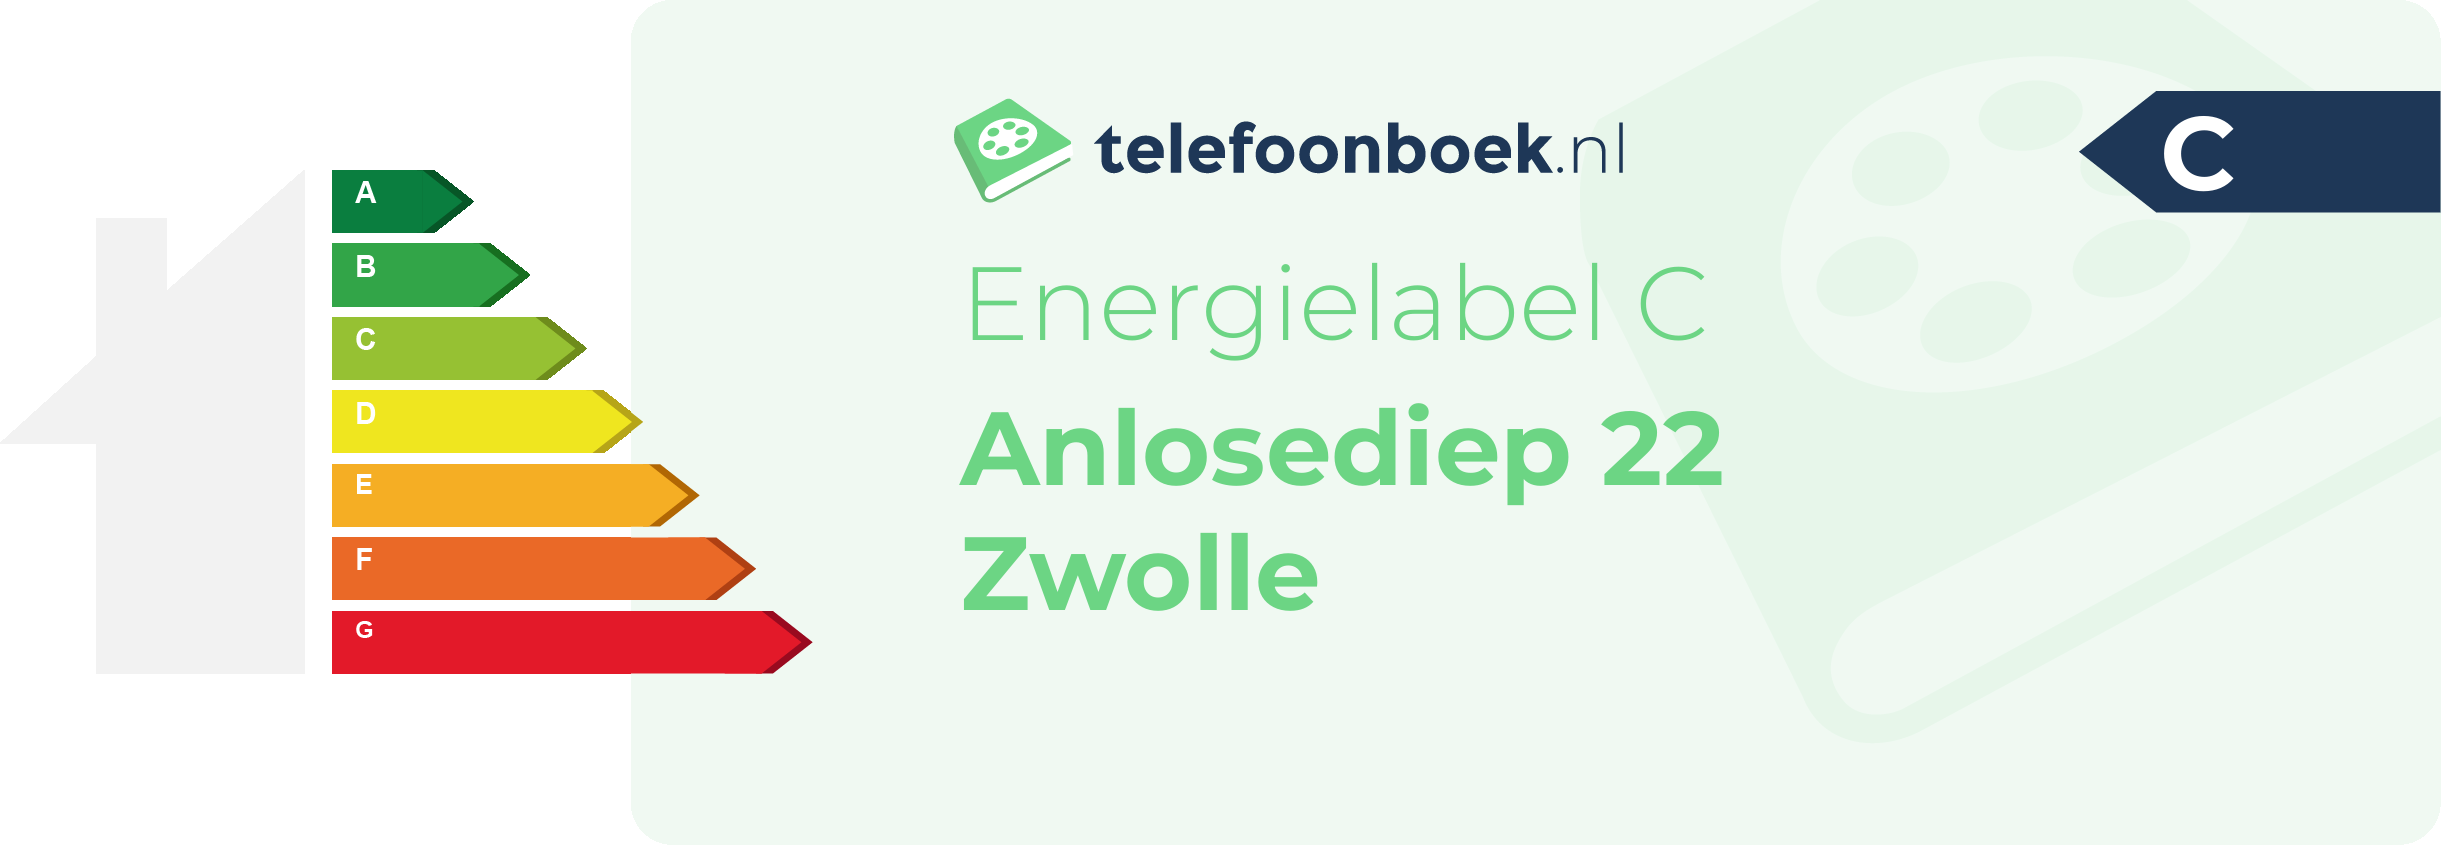 Energielabel Anlosediep 22 Zwolle